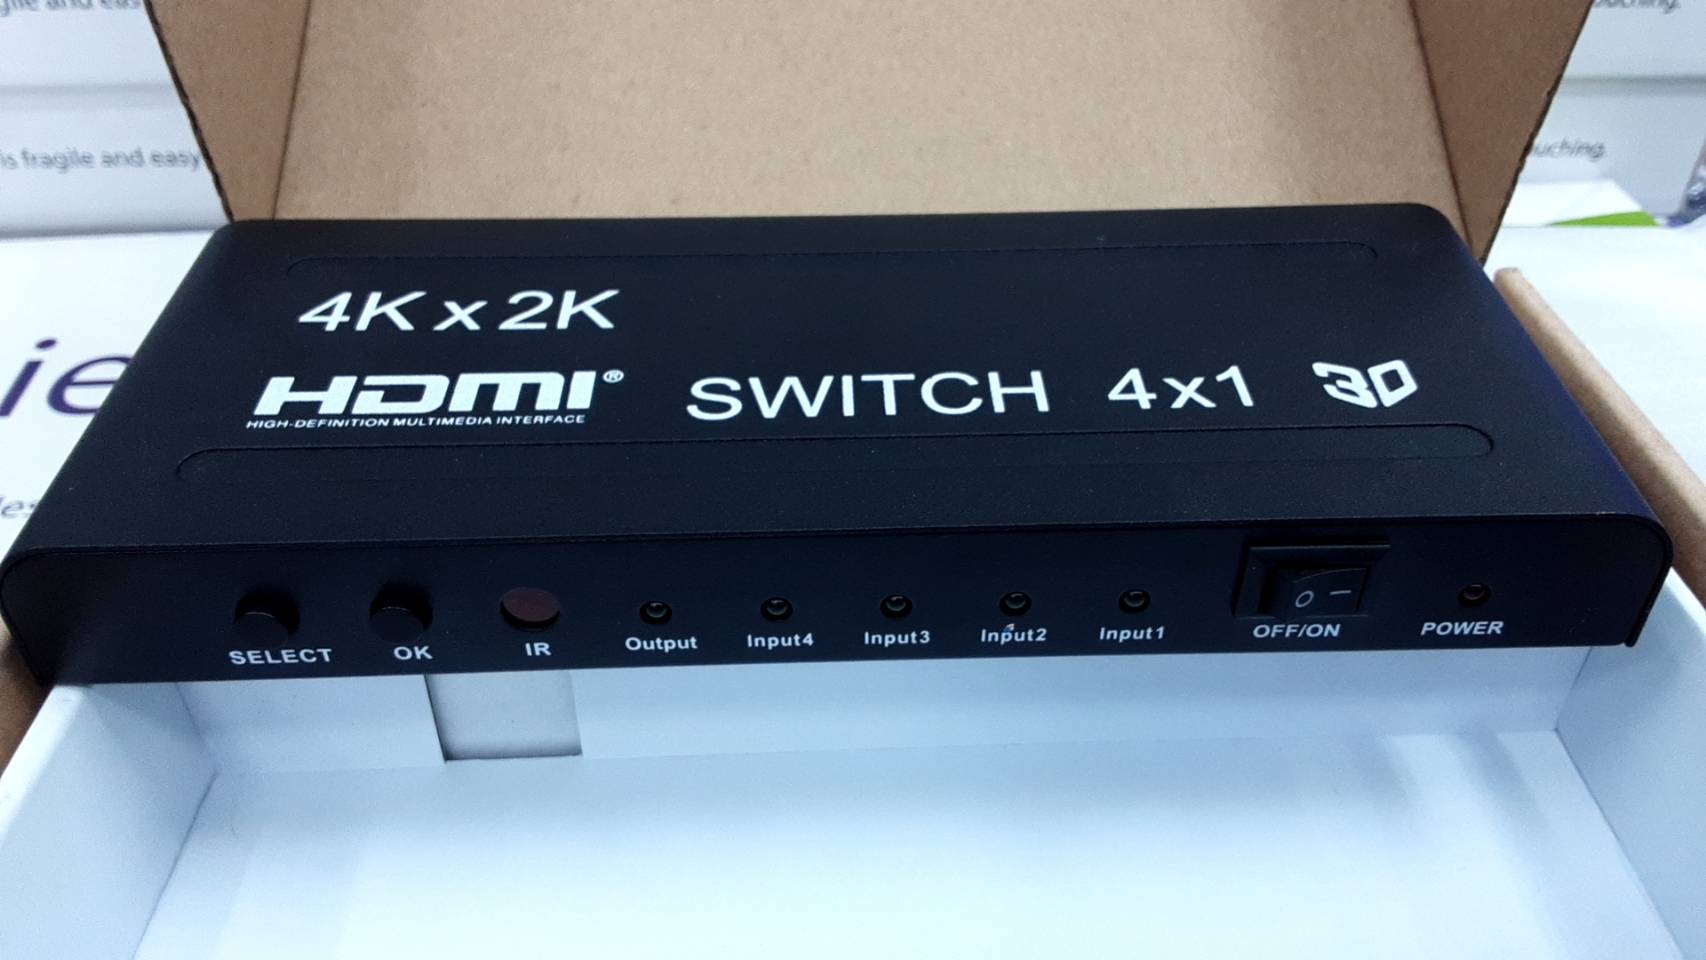 HDMI Switch 4x1